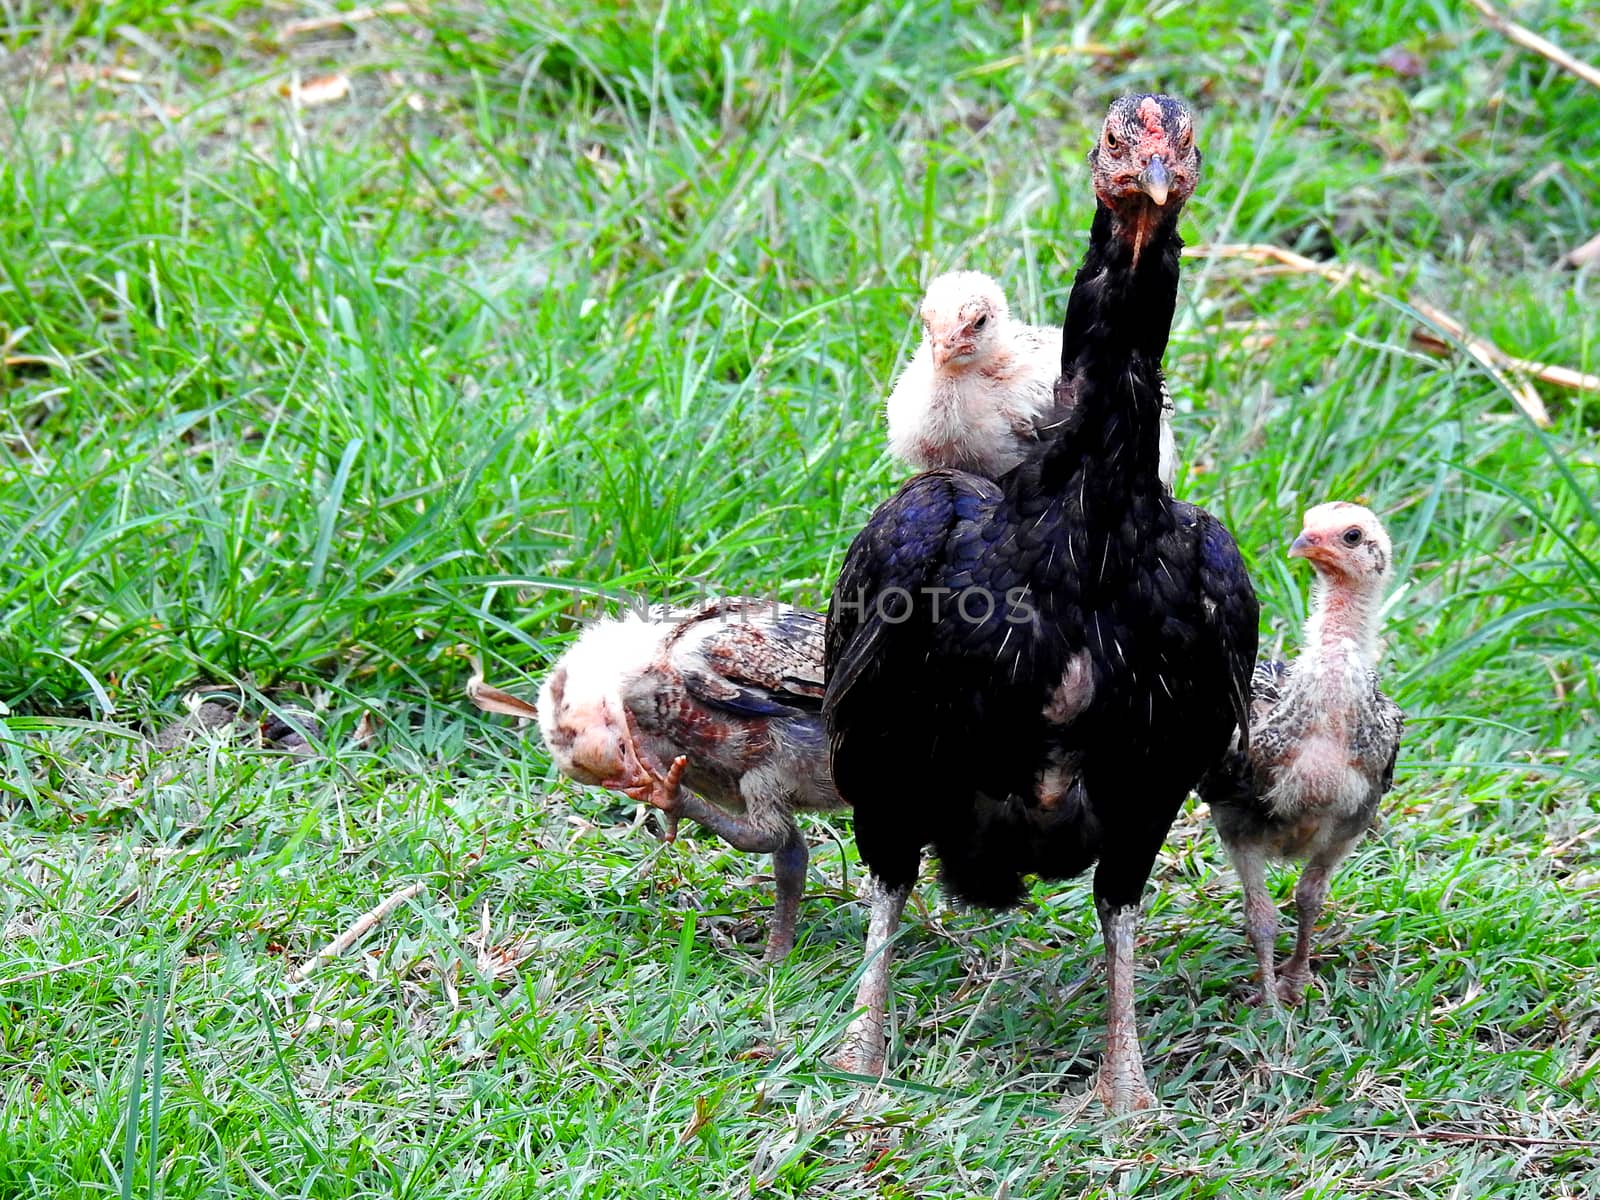 Hen and chicks in garden.